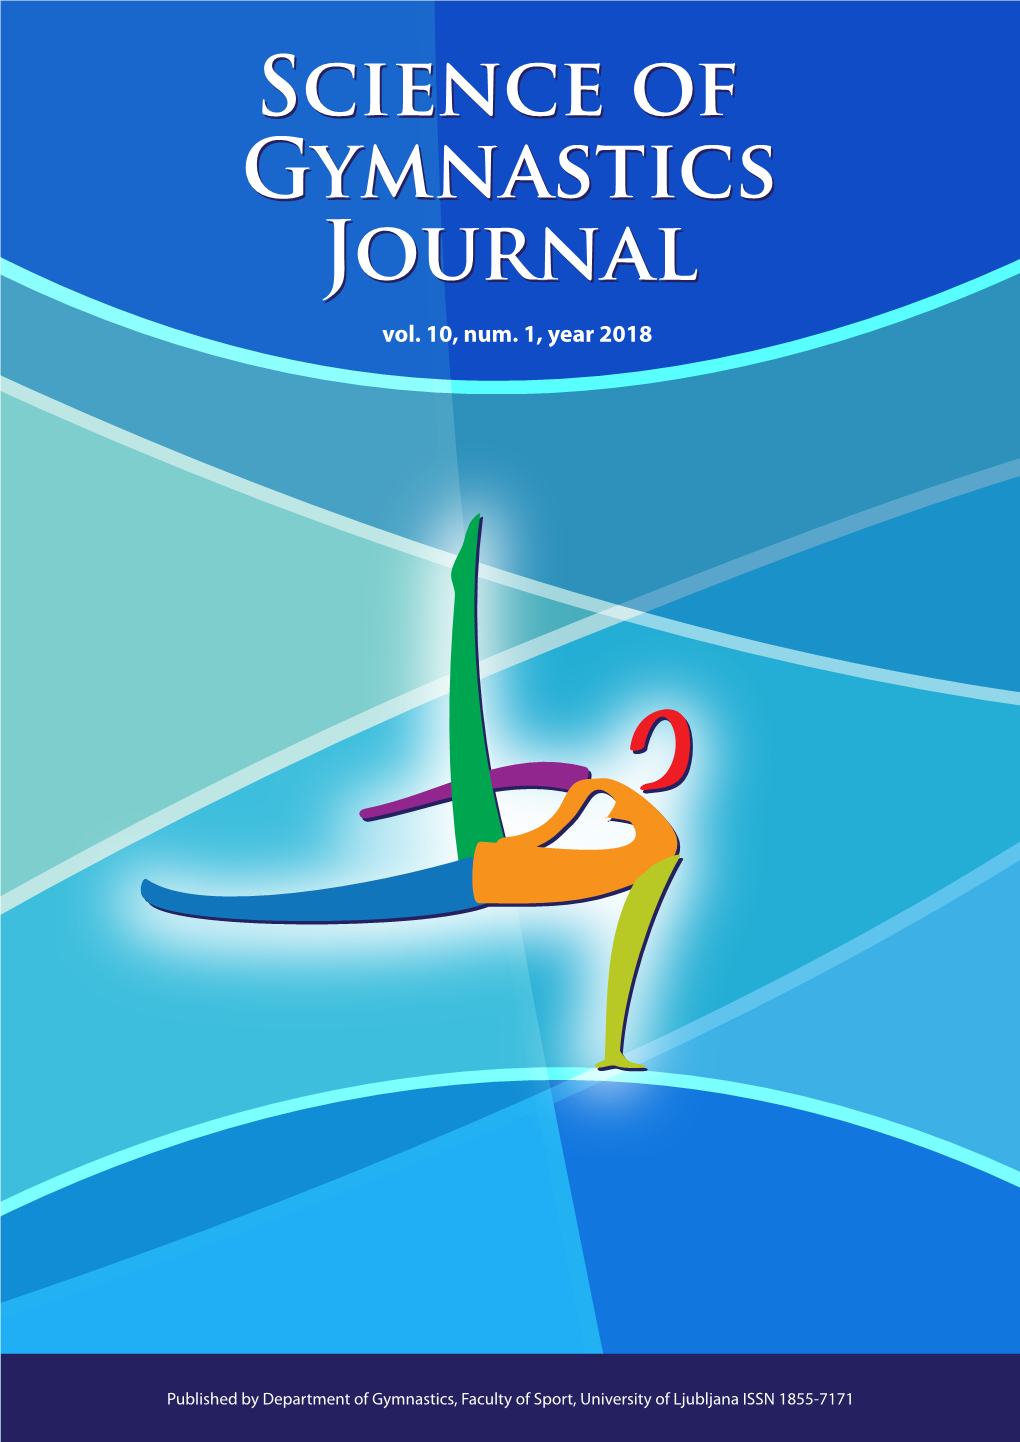 Science of Gymnastics Journal (Scgym®)